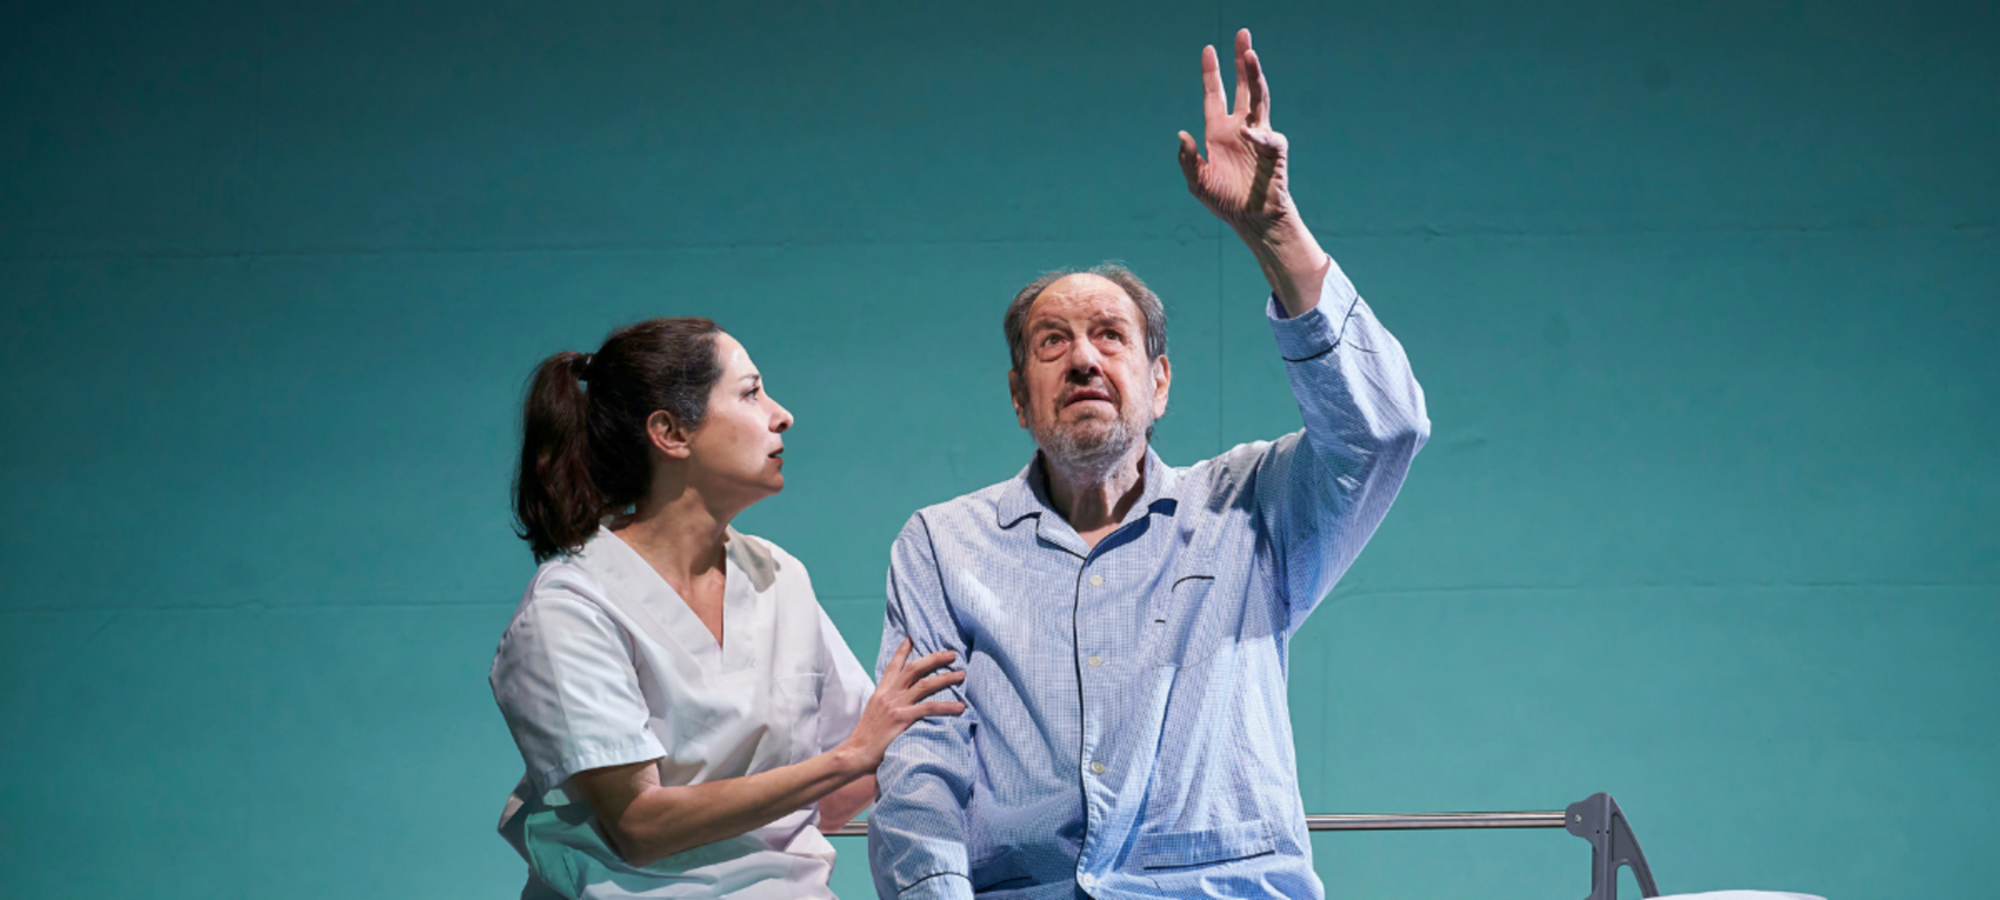 Josep María Pou vuelve a las tablas con 'El Padre', un viaje hacia el olvido (Teatro Bellas Artes)